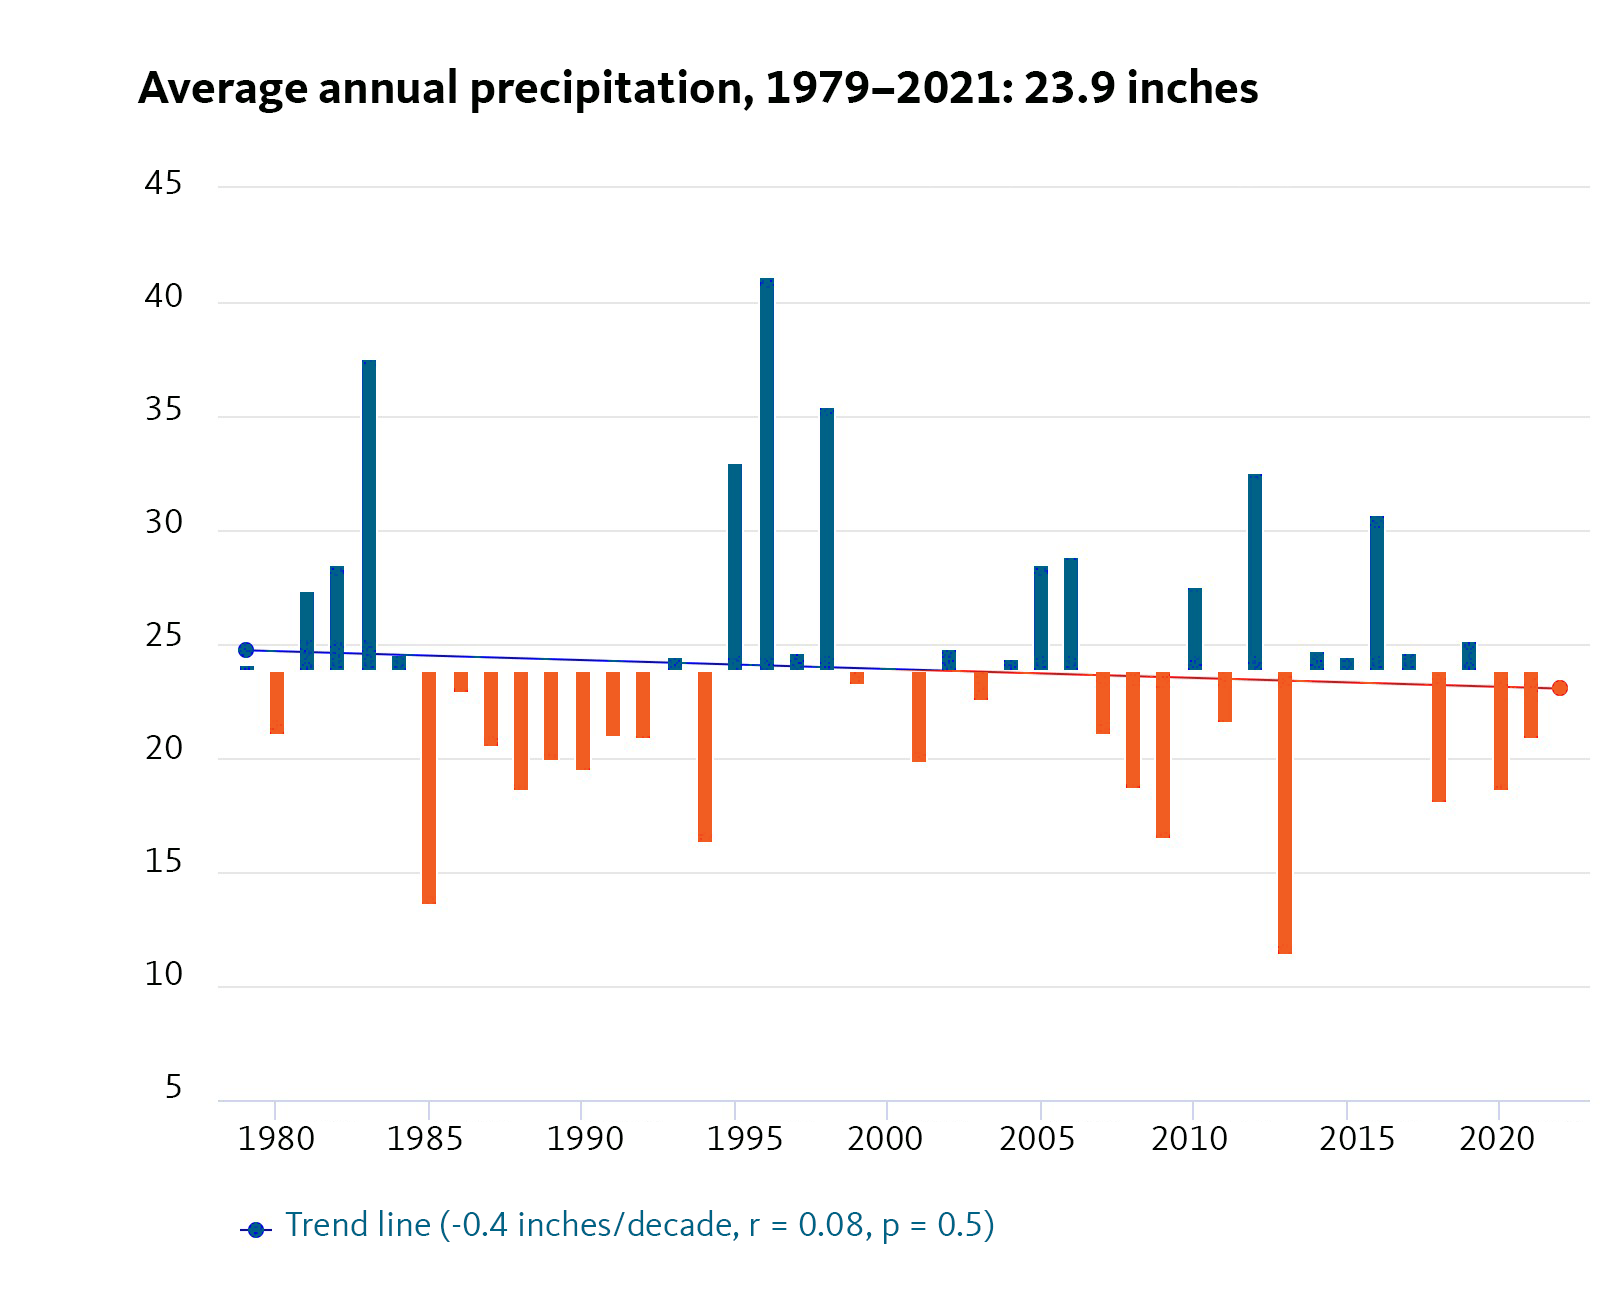 trend line shows decrease in annual precipitation